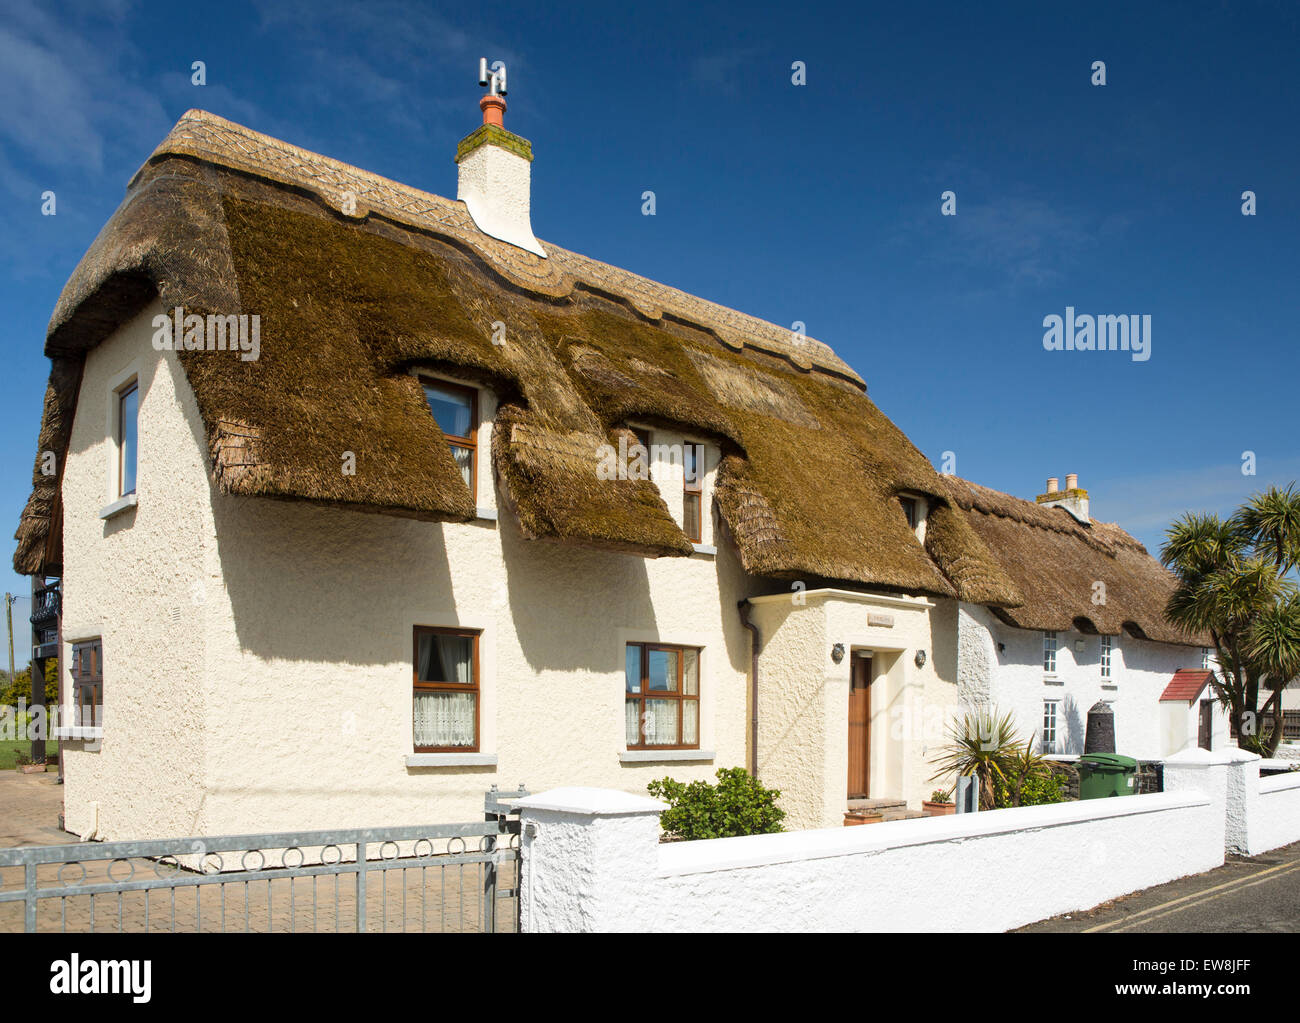 Irlanda, Co Wexford, Kilmore Quay, idilliaco cottage con il tetto di paglia nel centro del villaggio Foto Stock